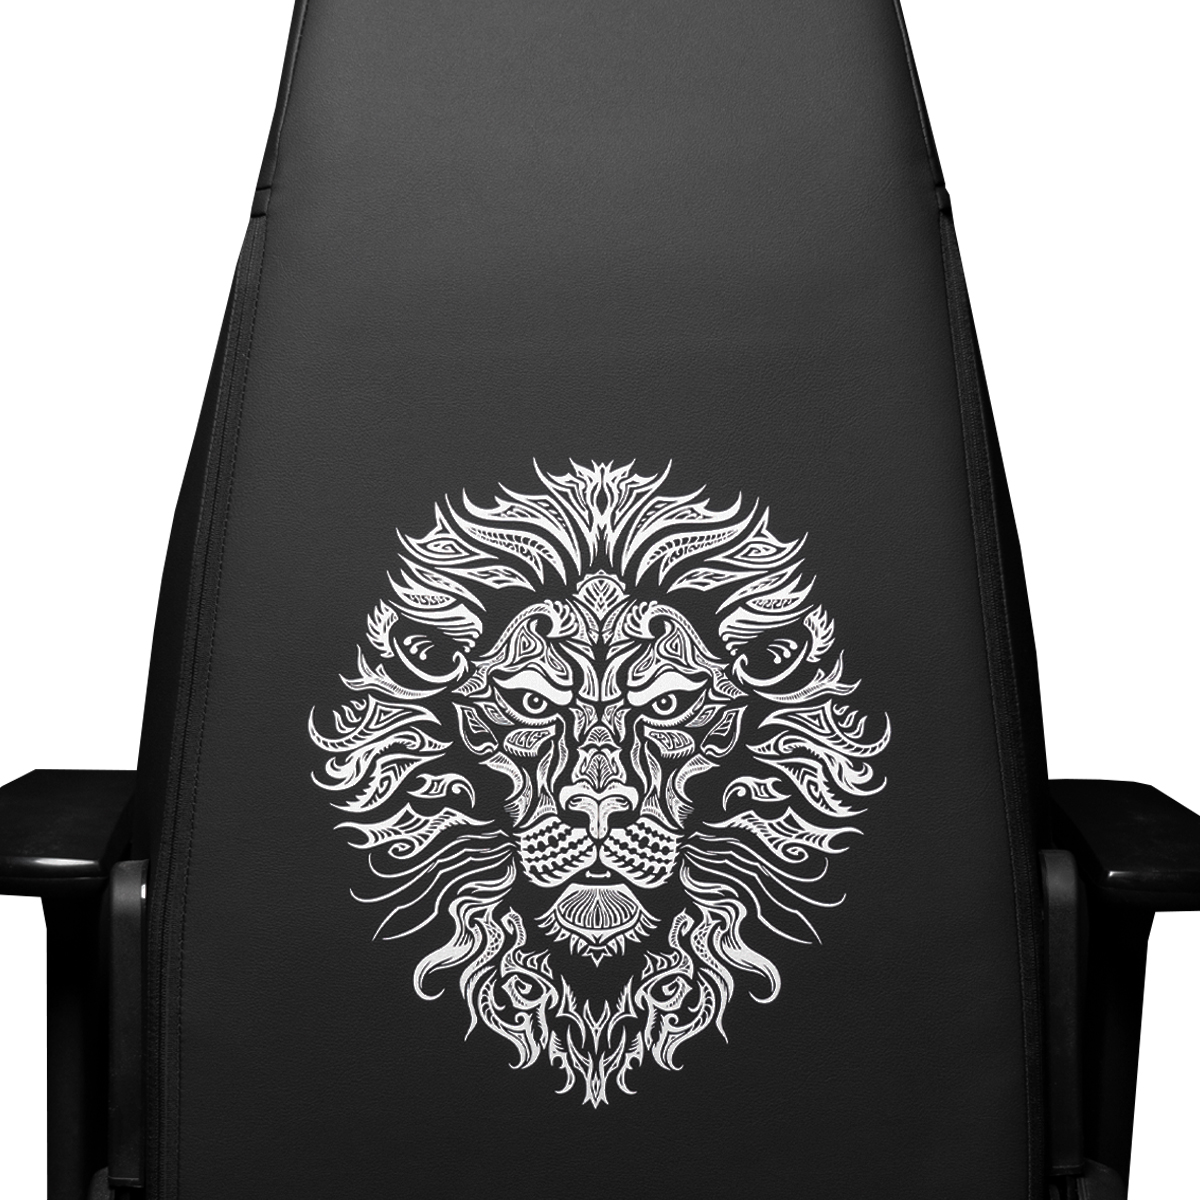 Artyfakes custom printed chair